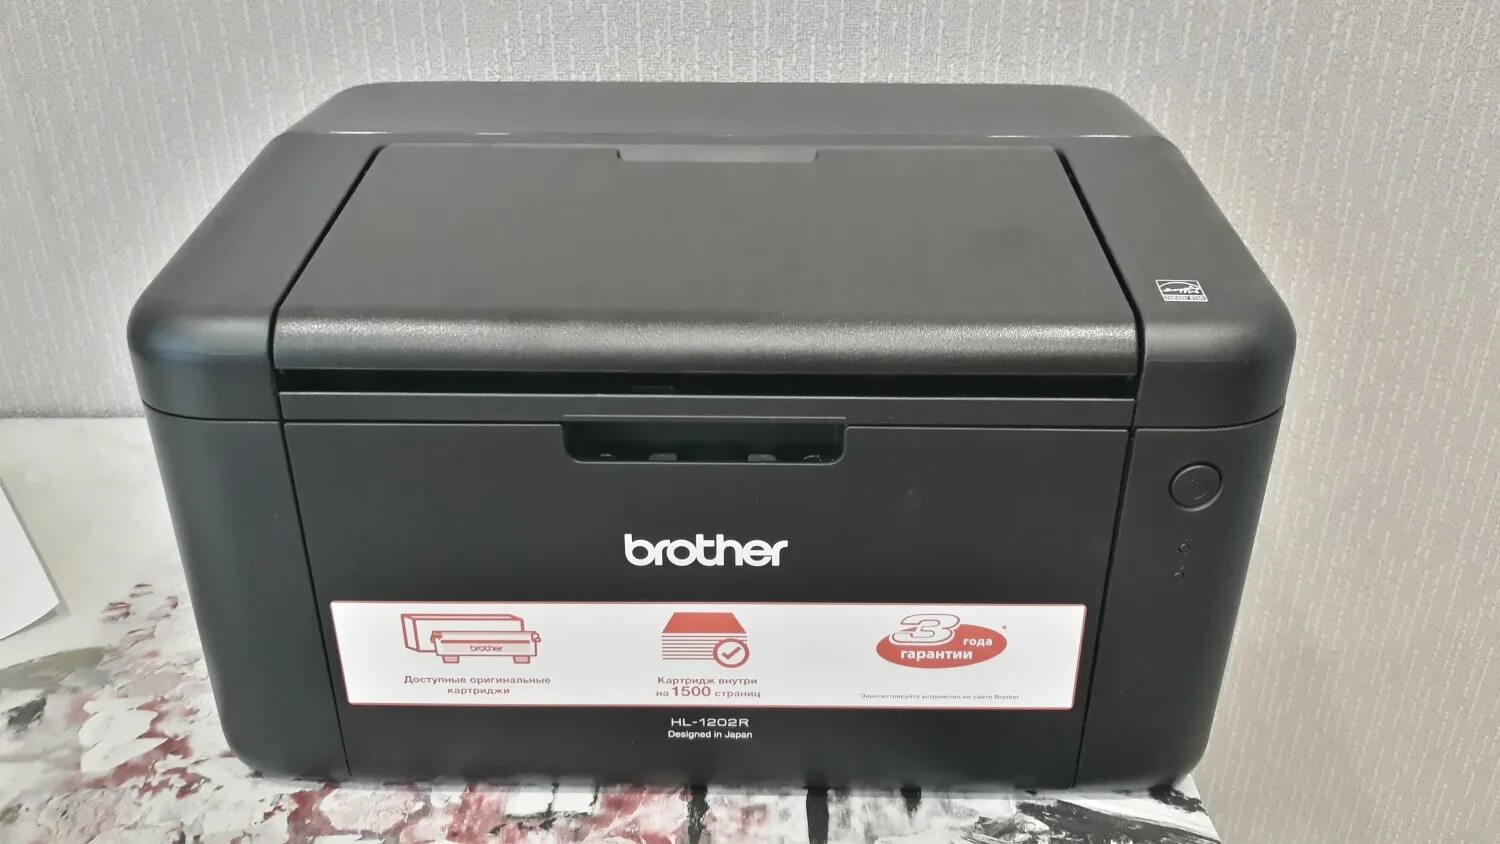 Принтер brother hl 1202r. Лазерный принтер brother hl-1202r. Brother 1202r. Brother hl 1202. Hl-1202r.